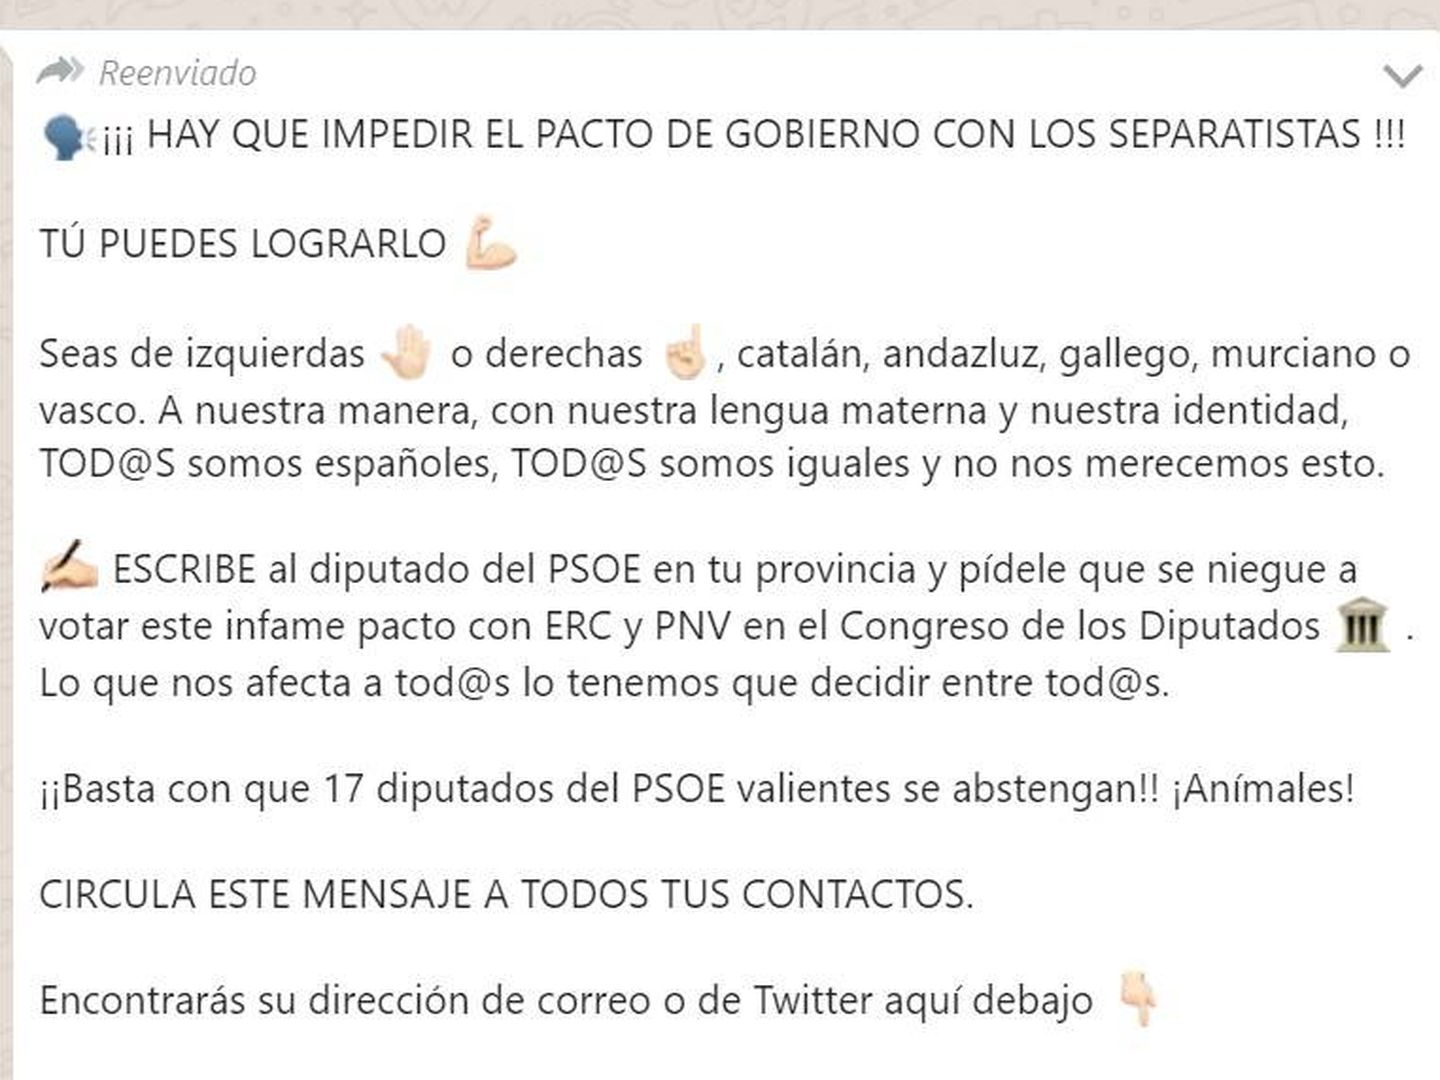 Campaña de WhatsApp para presionar a los diputados del PSOE (EC)